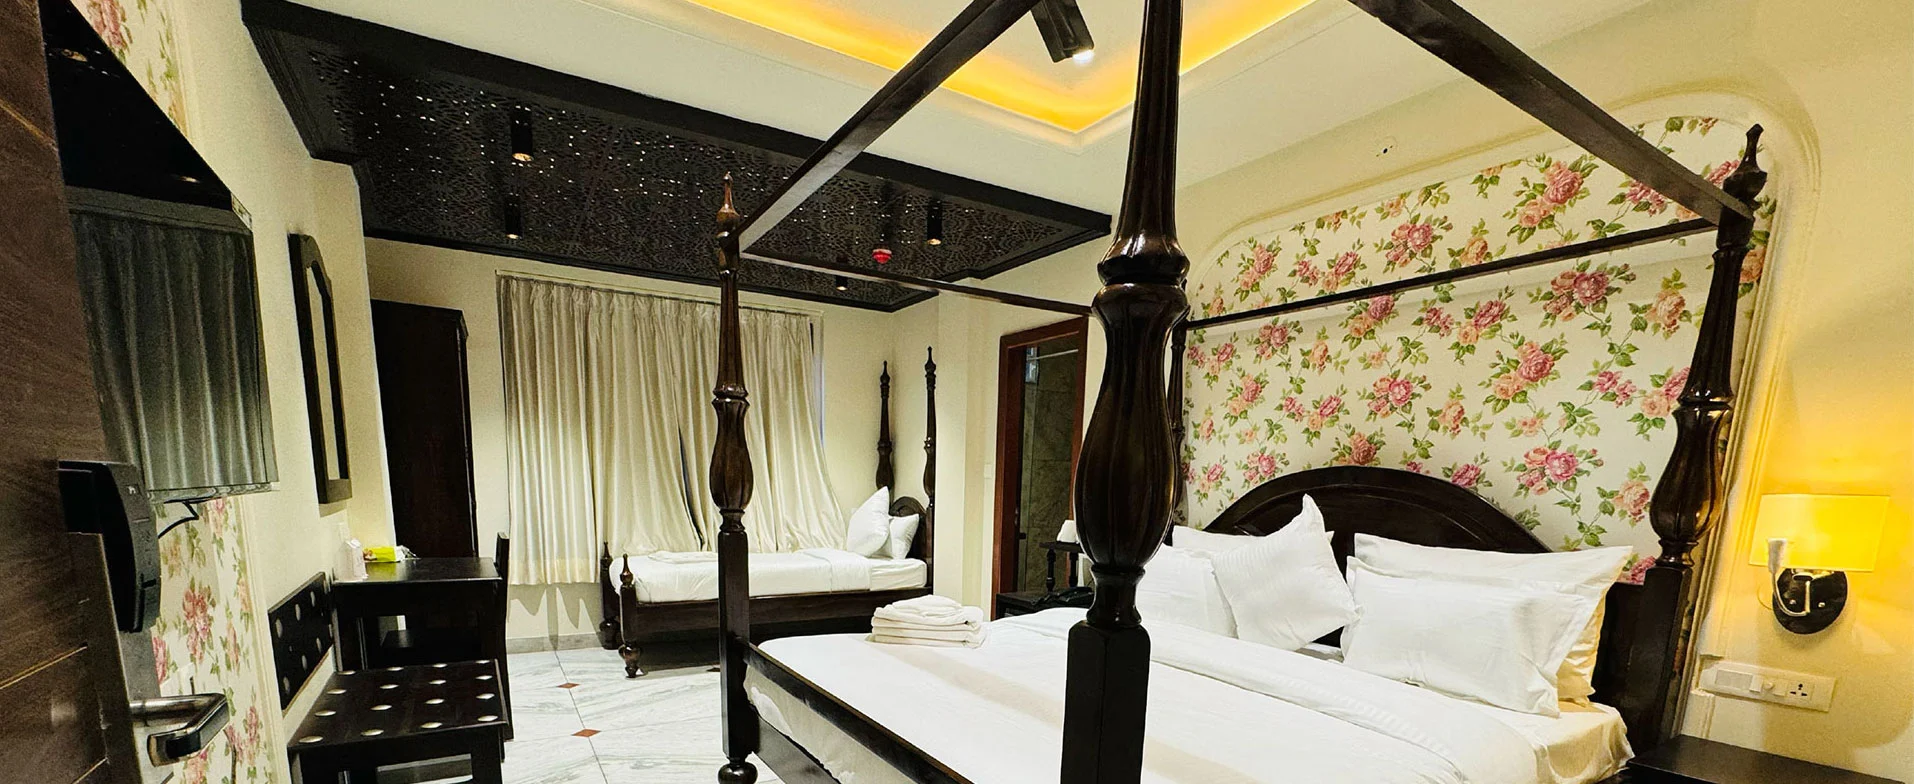 Hotel Jaipur Dreams